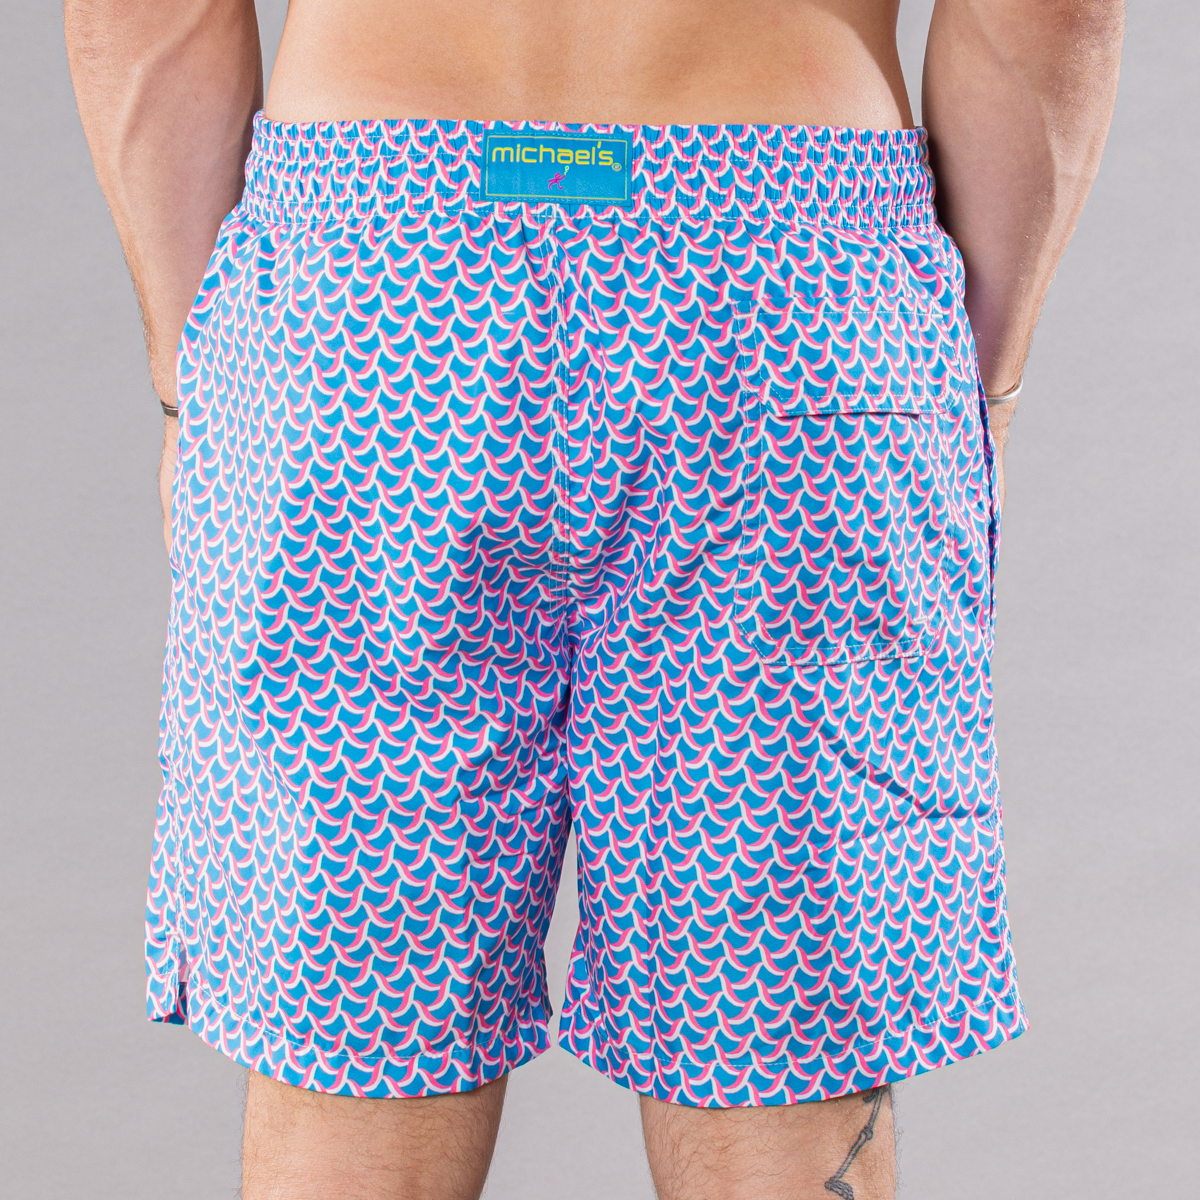 Men's Mesh Liner Swim Trunks - Swirl Print Turquoise/Coral